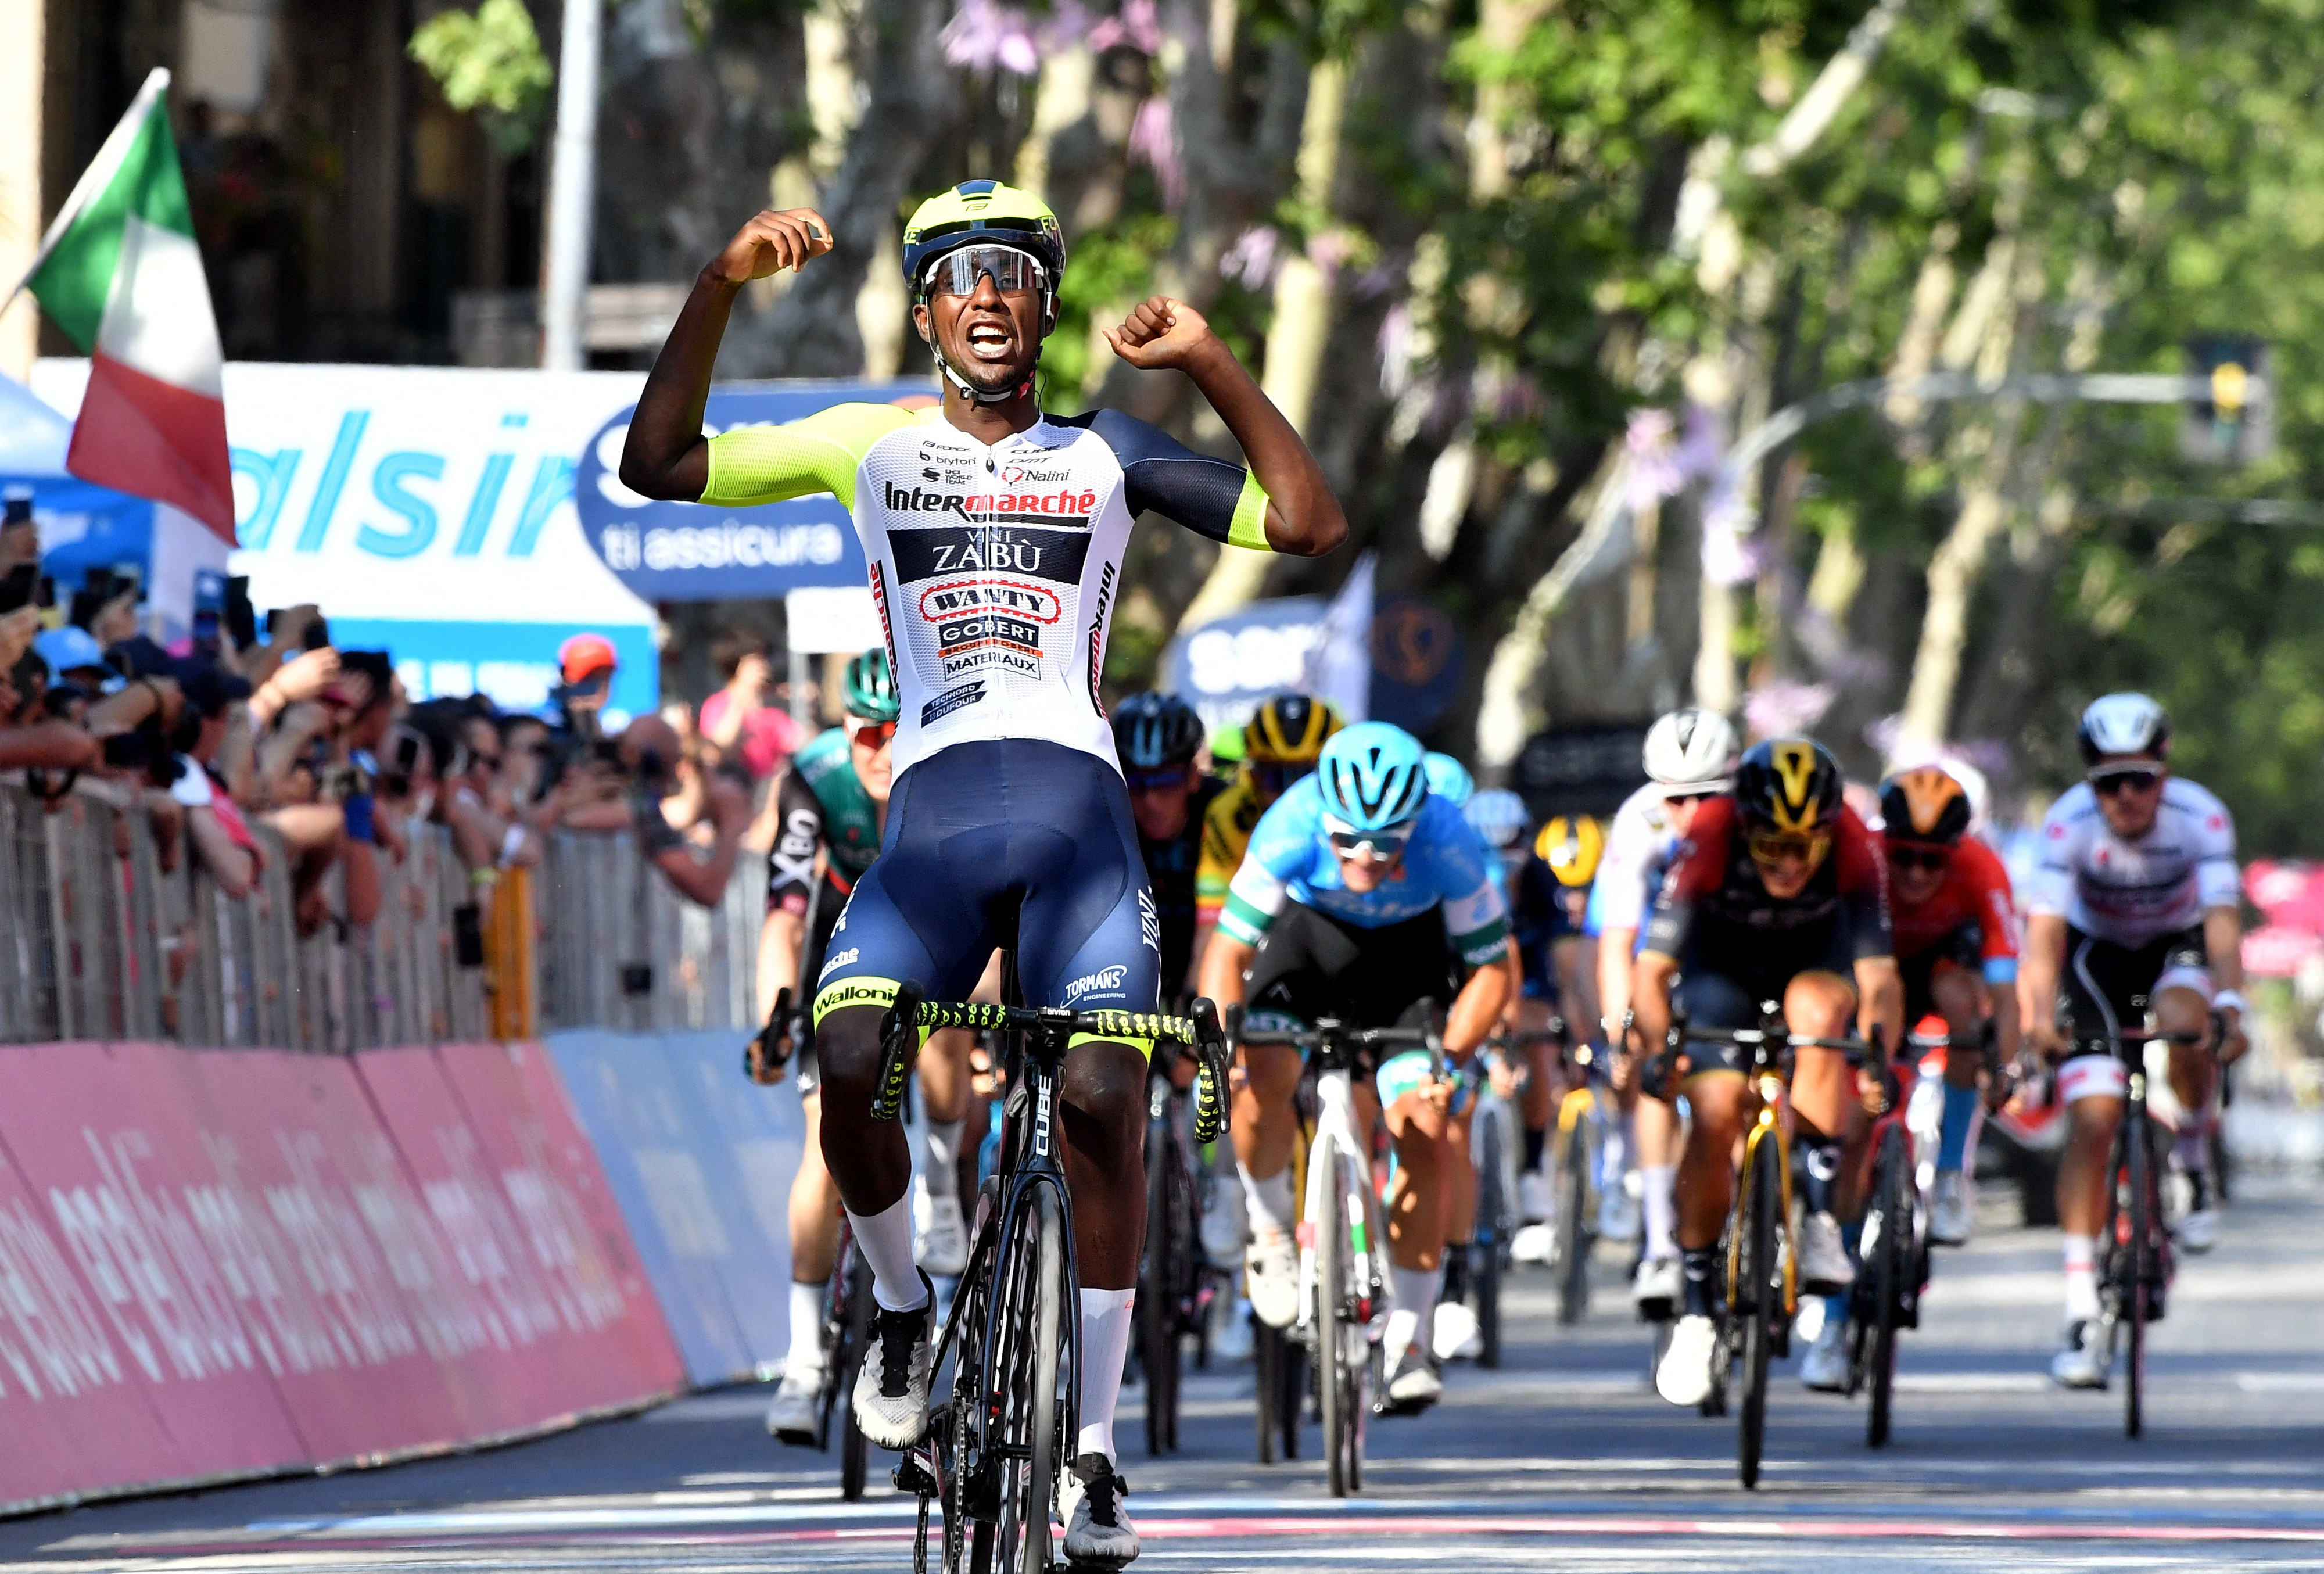 הרוכב בינאים גירמאי מאריתראה הפך לאפריקאי הראשון שזוכה בקטע במירוץ ג'ירו ד'איטליה